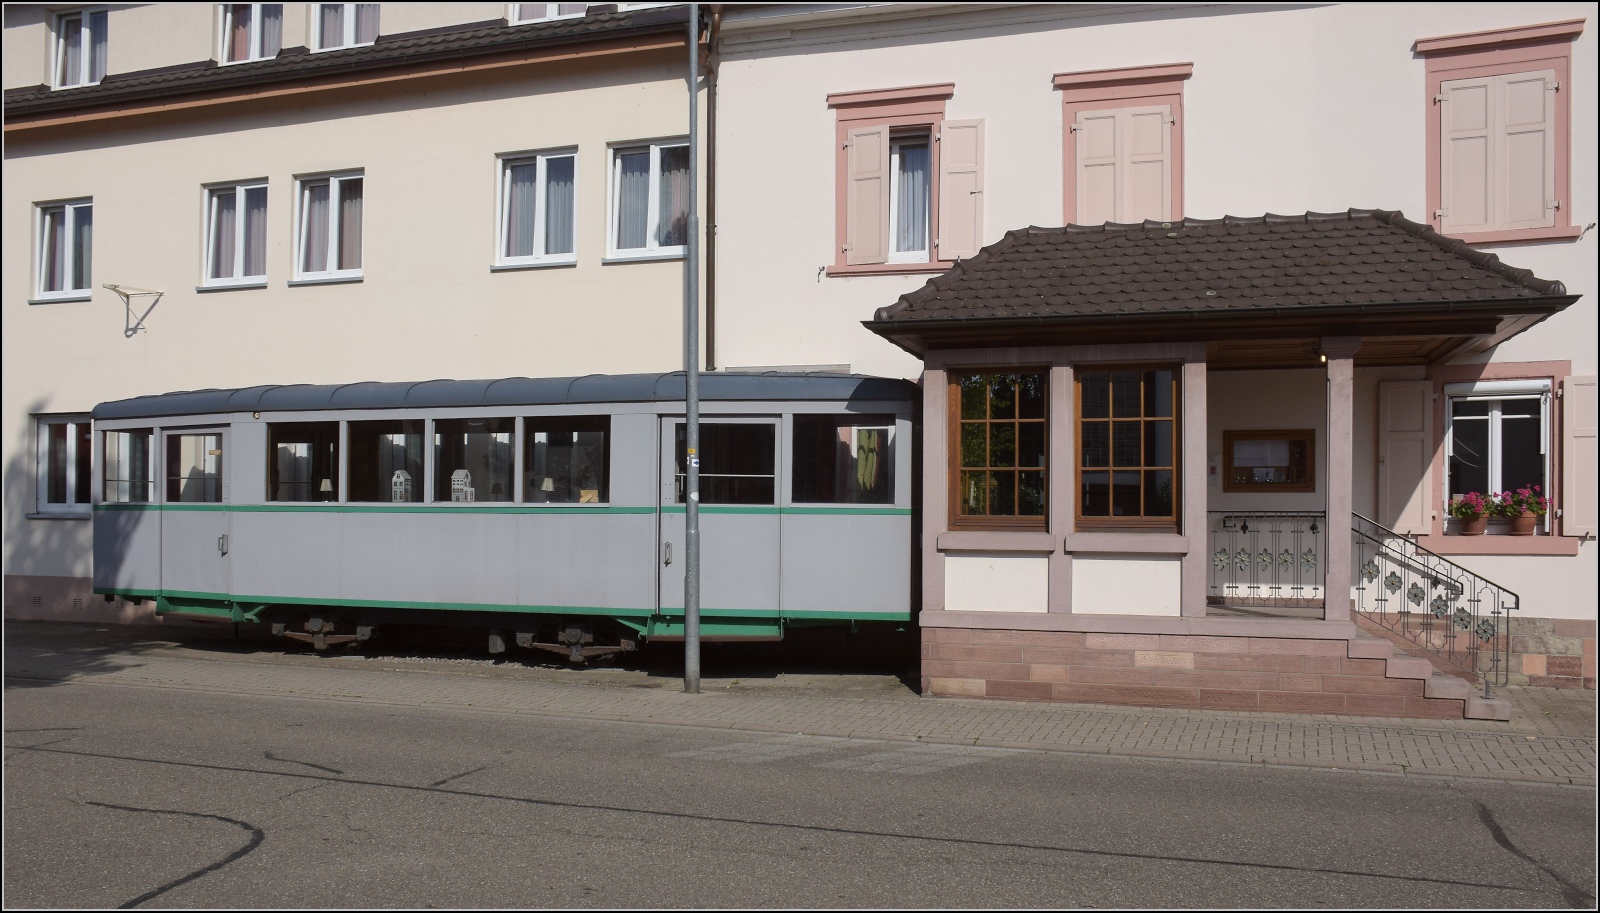 Unweit vom Bahnhof Kork ist am Hotel Hirsch ein zweiachsiger Schmalspurbeiwagen aufgestellt. Vermutlich handelt sich es um ein Relikt der Mittelbadischen Eisenbahn. August 2022.